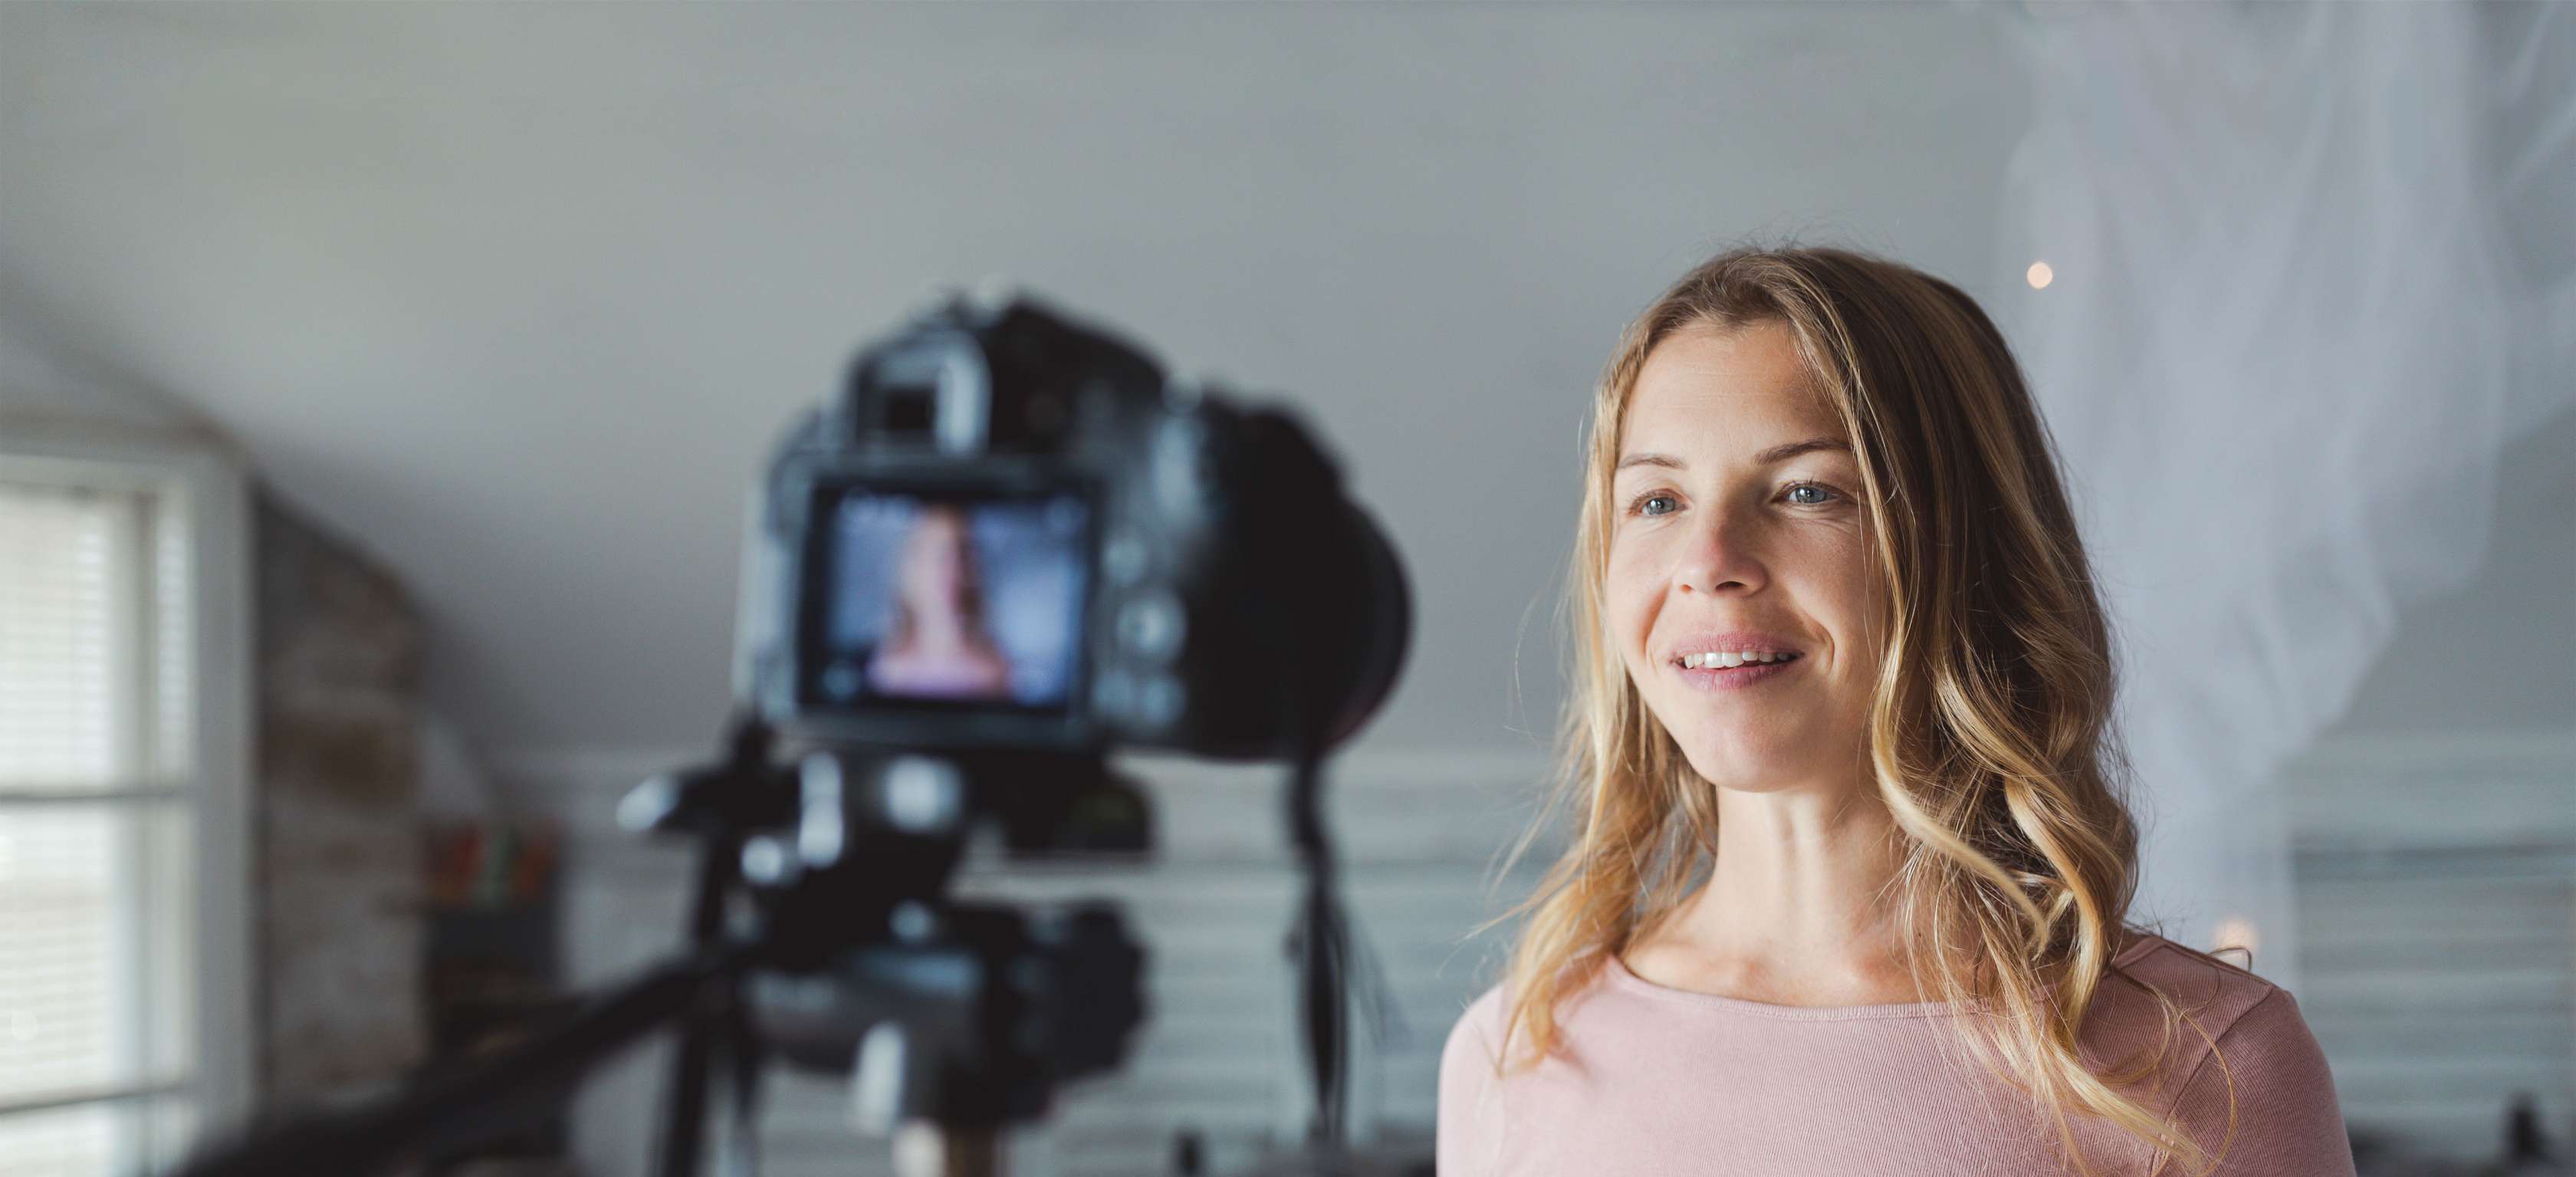 Digitaler Nachlass: Eine blonde Frau dreht ein Video von sich selbst